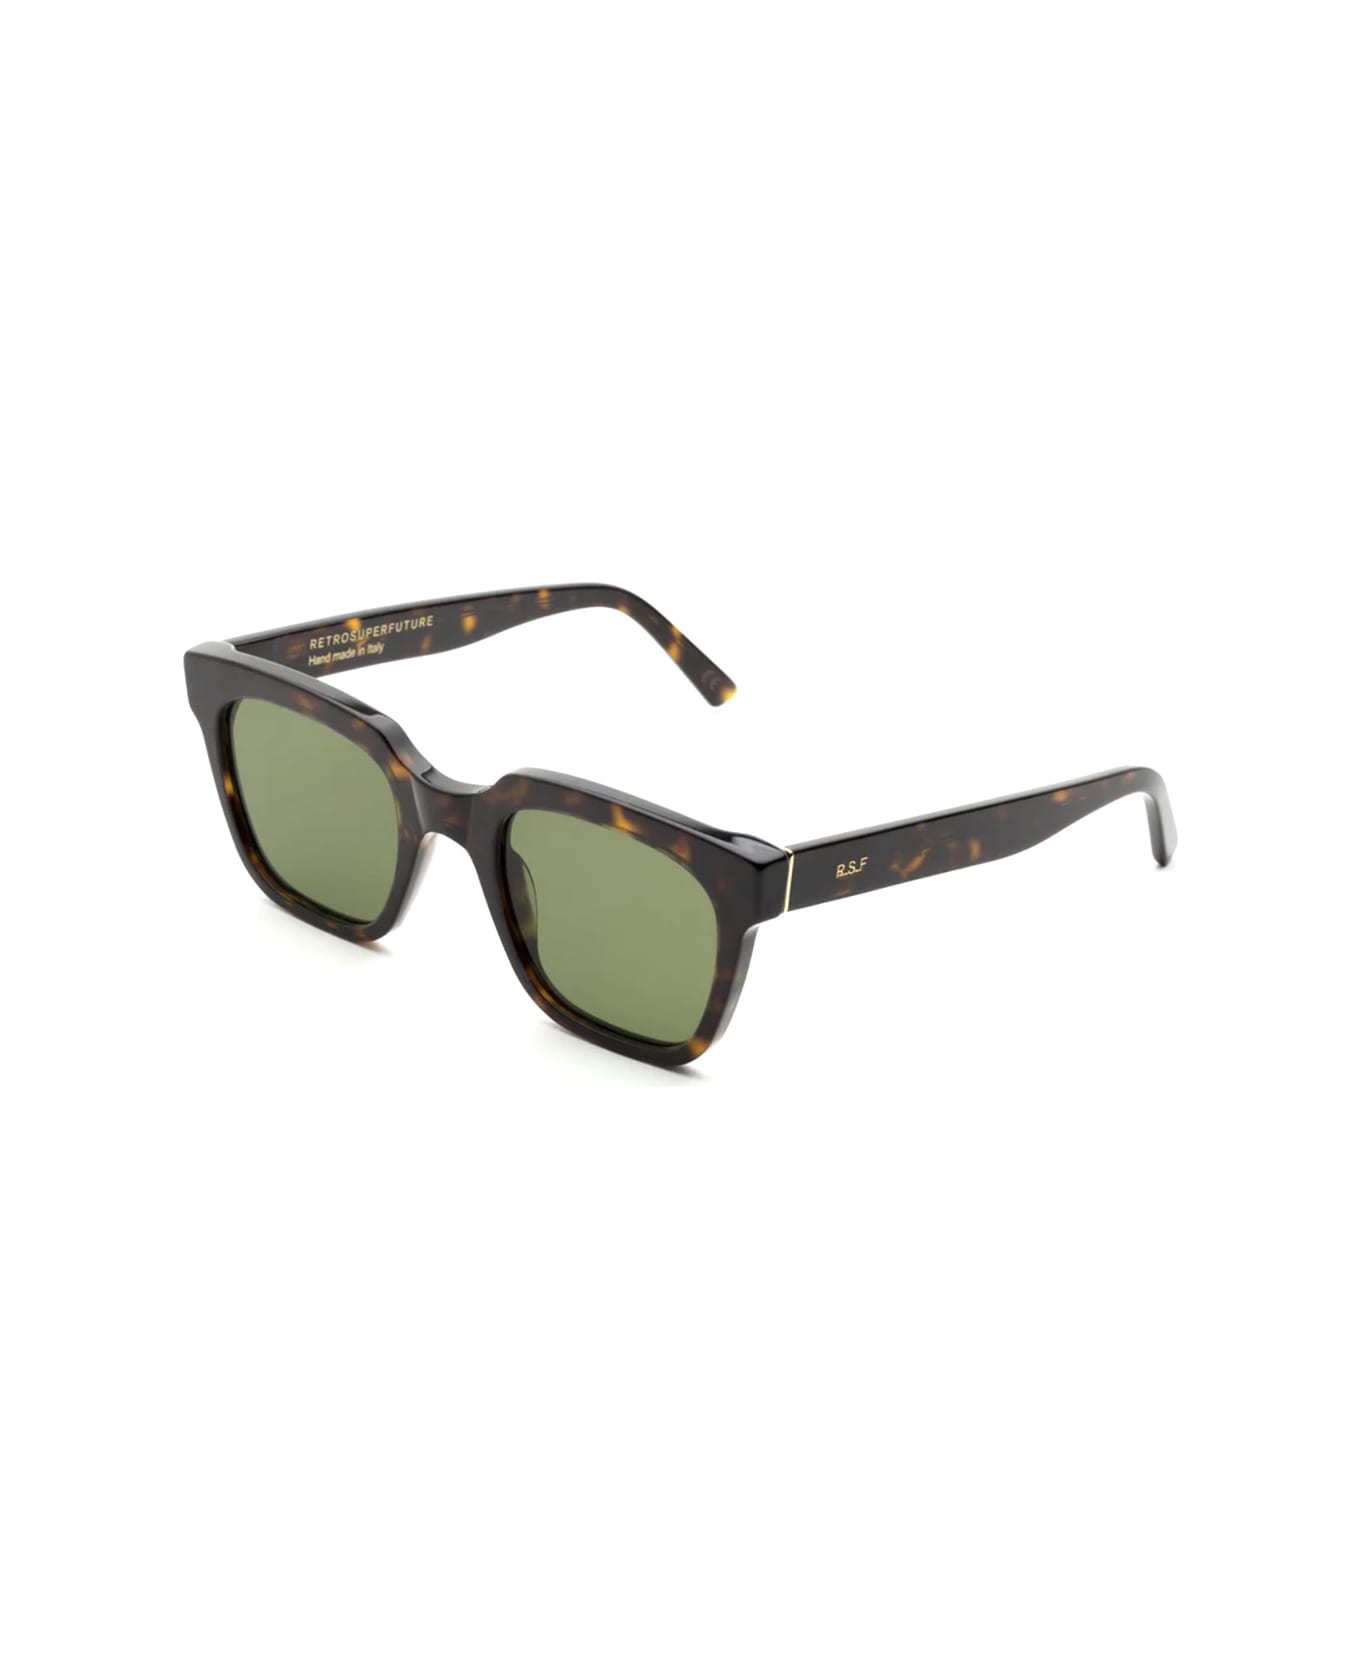 RETROSUPERFUTURE Giusto 3627 Green Sunglasses - Marrone